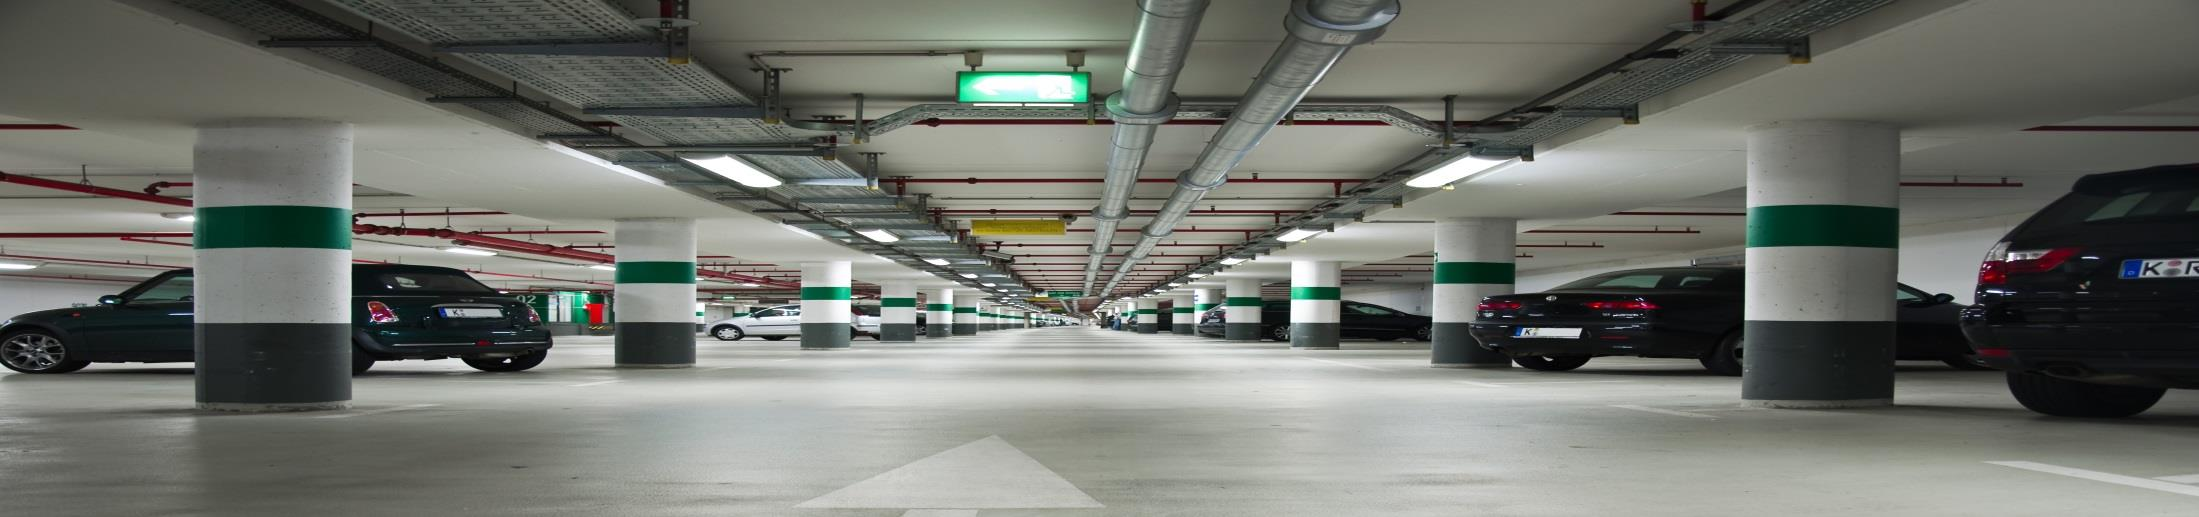 HET MARKTPLEINPARKING Voldoende parking voor bewoners en klanten handelaars Ondergronds Parking voorzien langs de rand van het marktplein, niet op het plein Gratis Duurtijdbeperking Indien